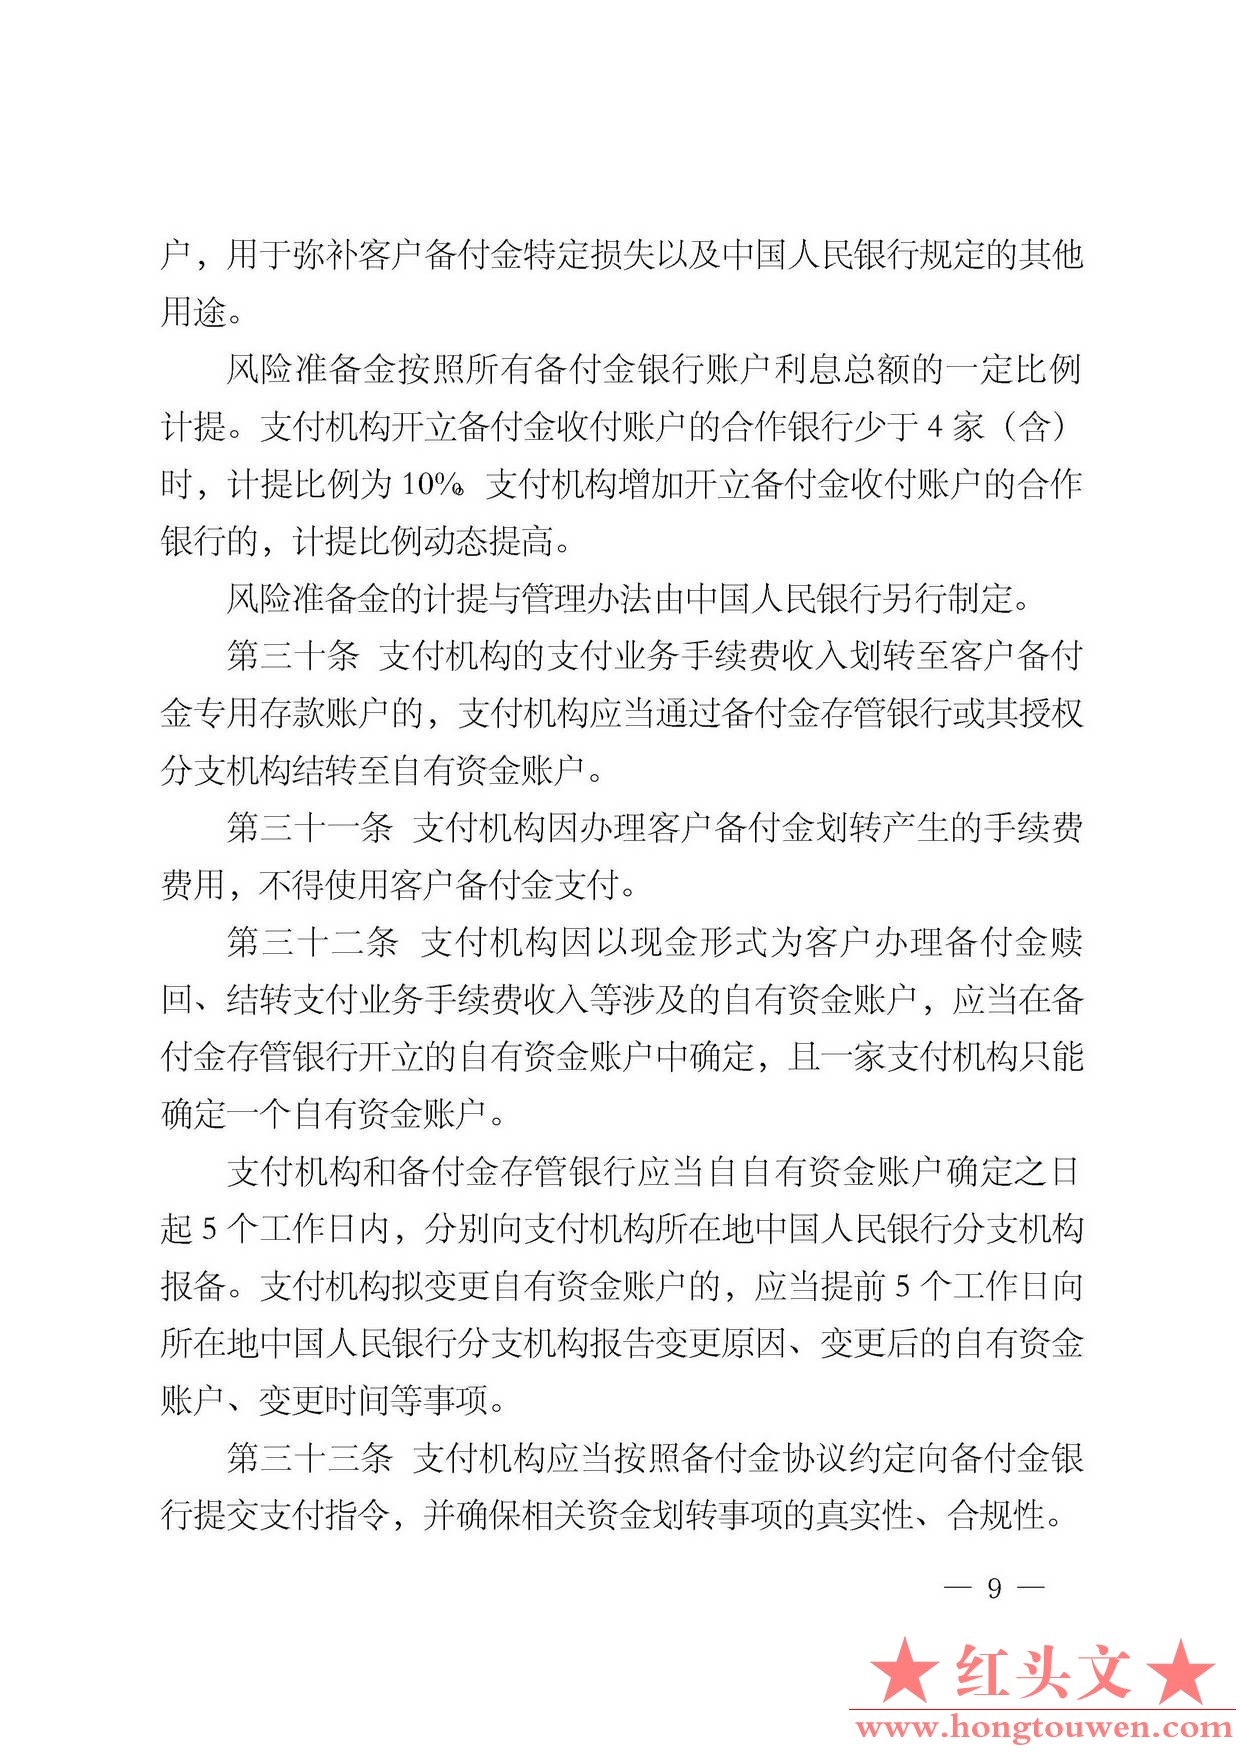 中国人民银行公告[2013]6号-《支付机构客户备付金存管办法》_页面_09.jpg.jpg